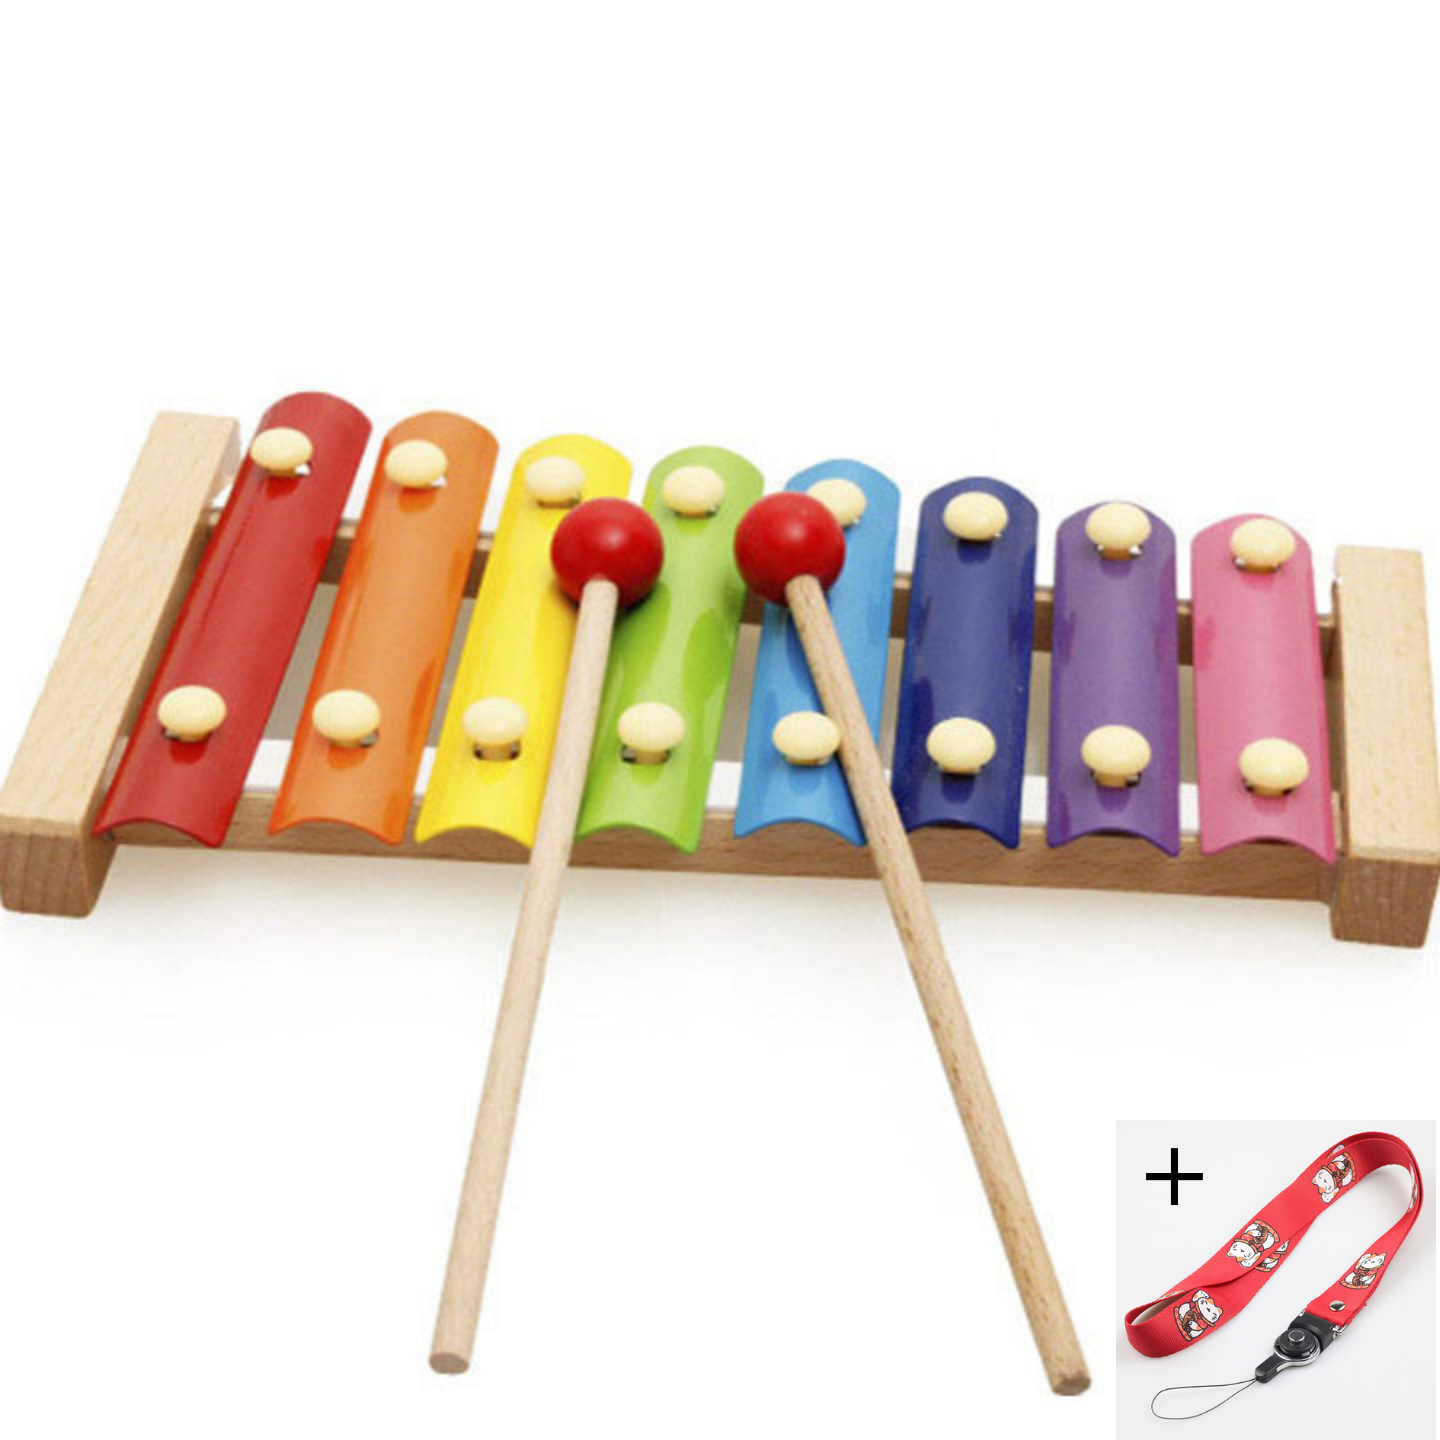 Đồ chơi đàn gỗ cho bé, an toàn với trẻ, làm từ kim loại phủ sơn cao cấp, âm thanh phát ra trong trẻo vui nhộn khơi dậy năng khiếu âm nhạc trong trẻ